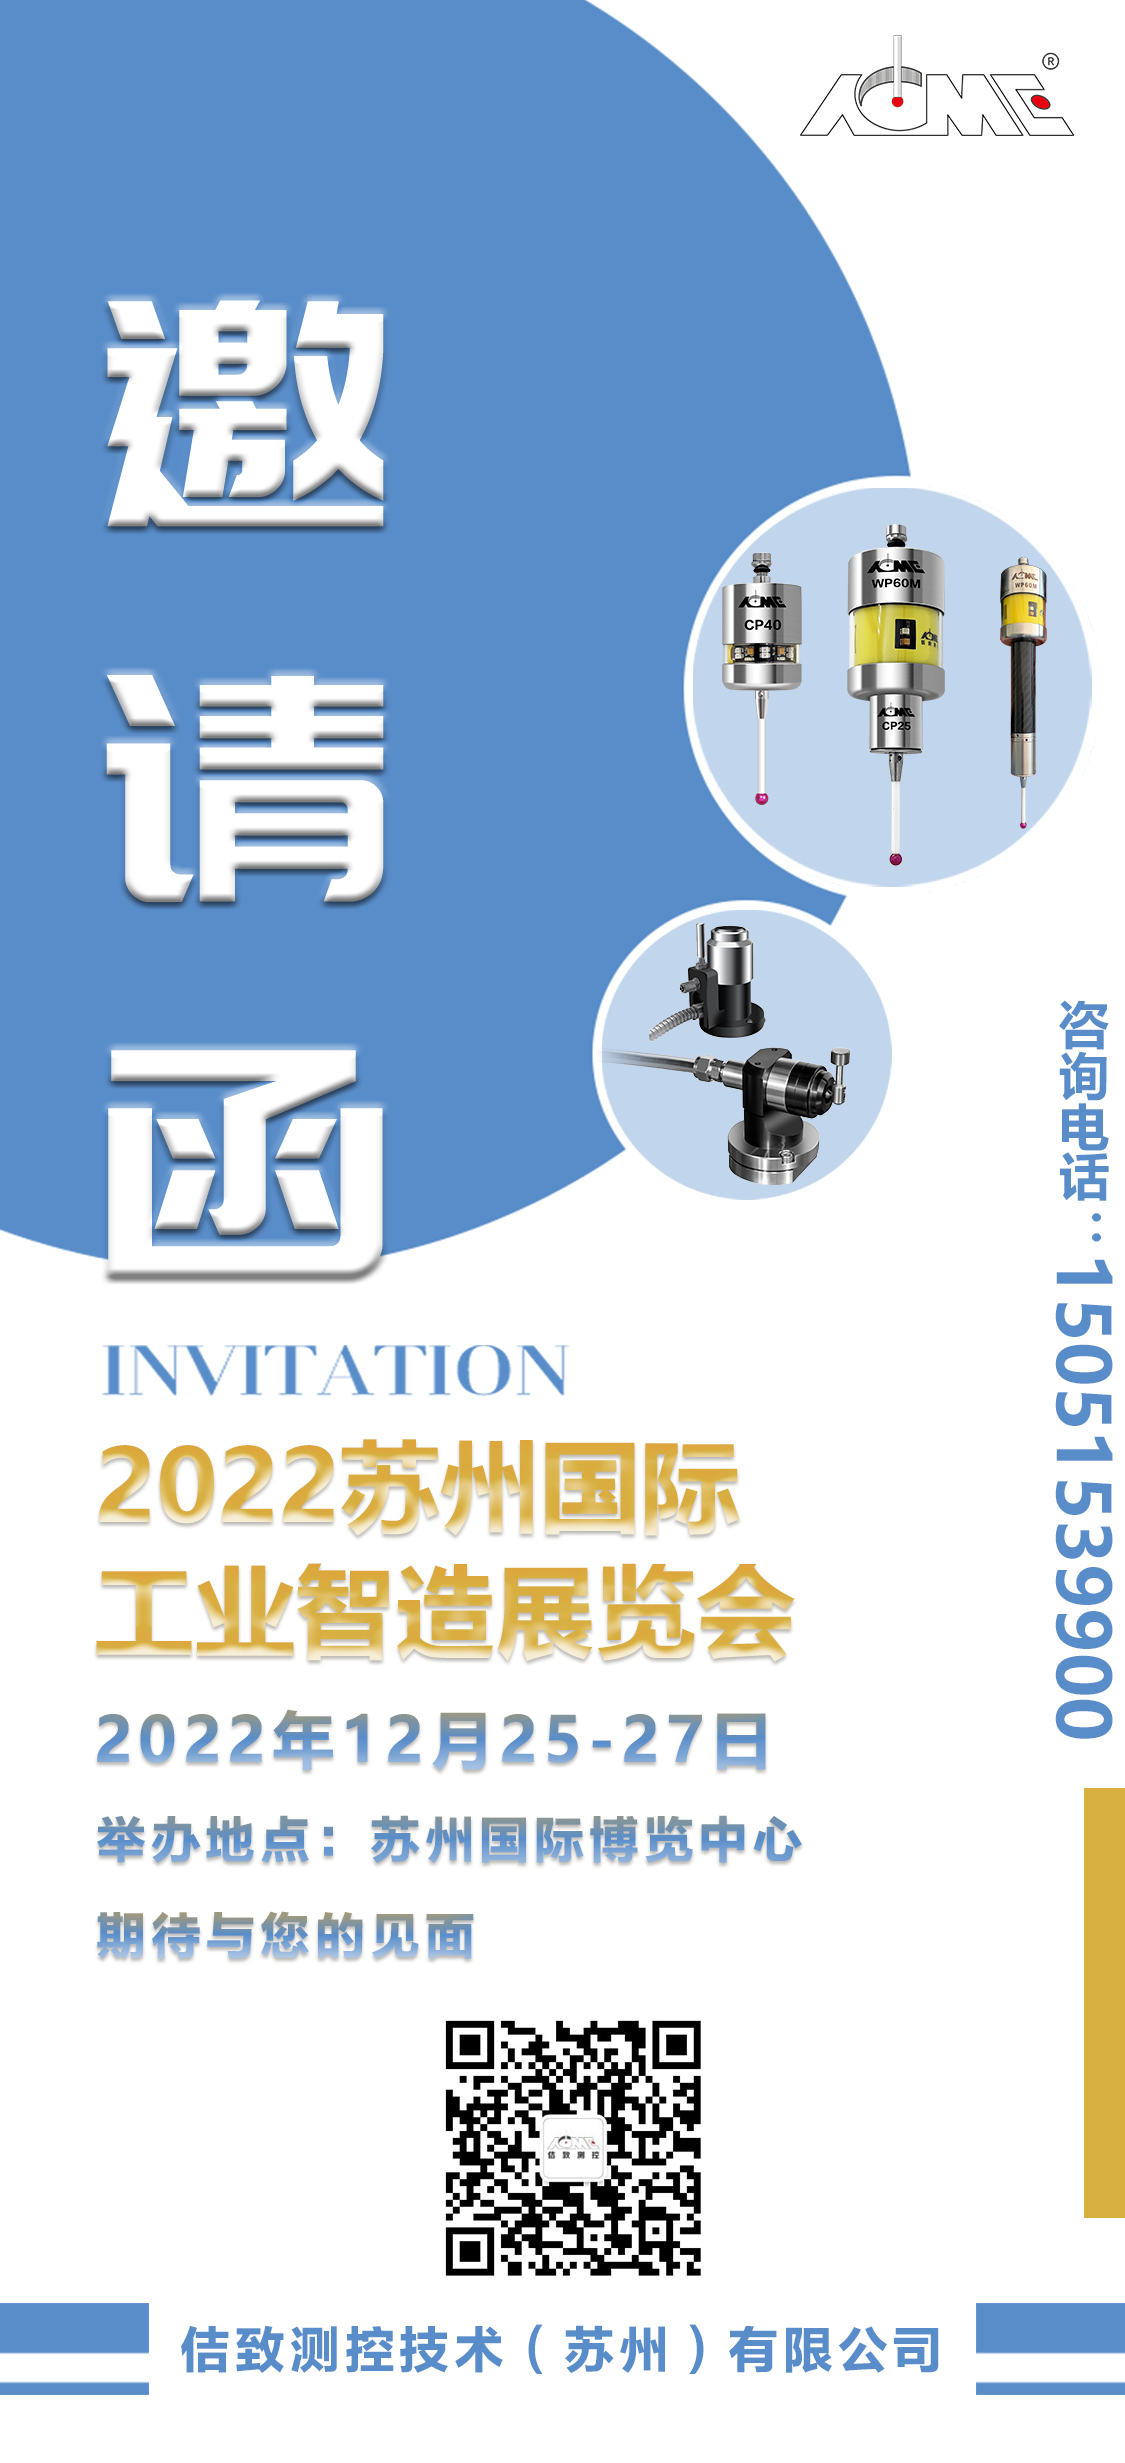 Liham ng imbitasyon sa 2022 Suzhou International Industrial Intelligent Manufacturing Exhibition (6)